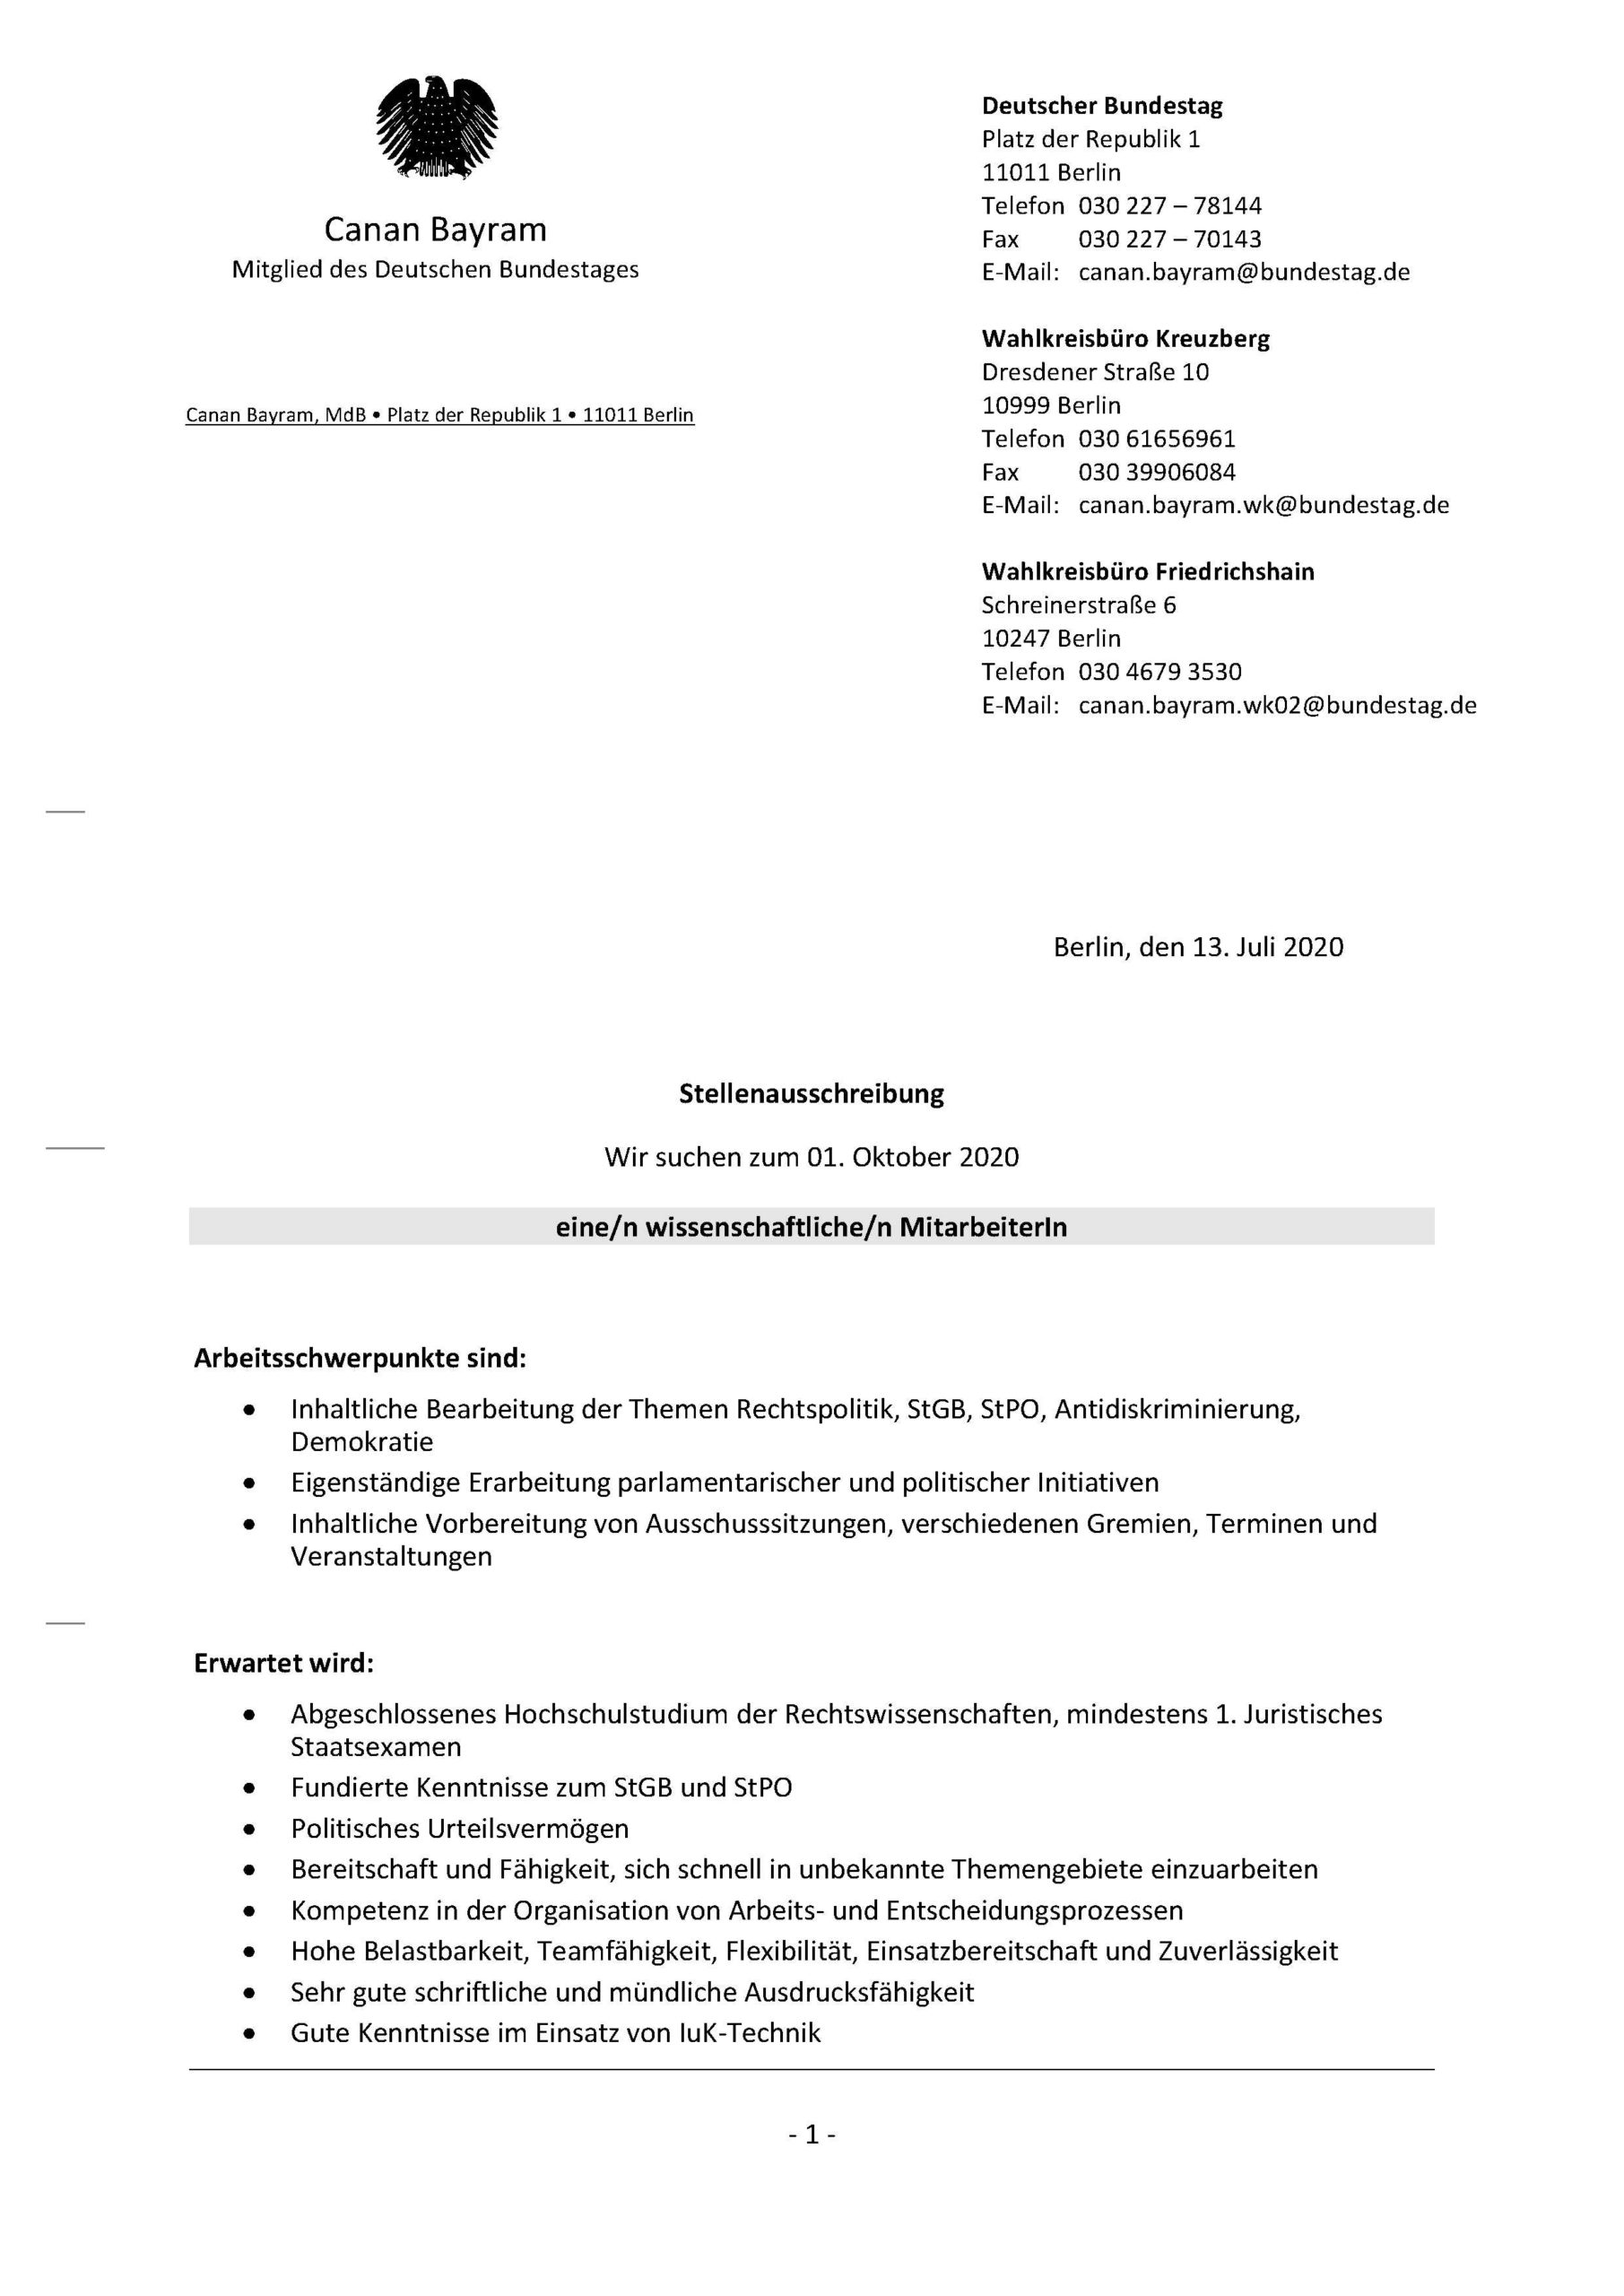 Stellenausschreibung WiMi Bundestagsbüro